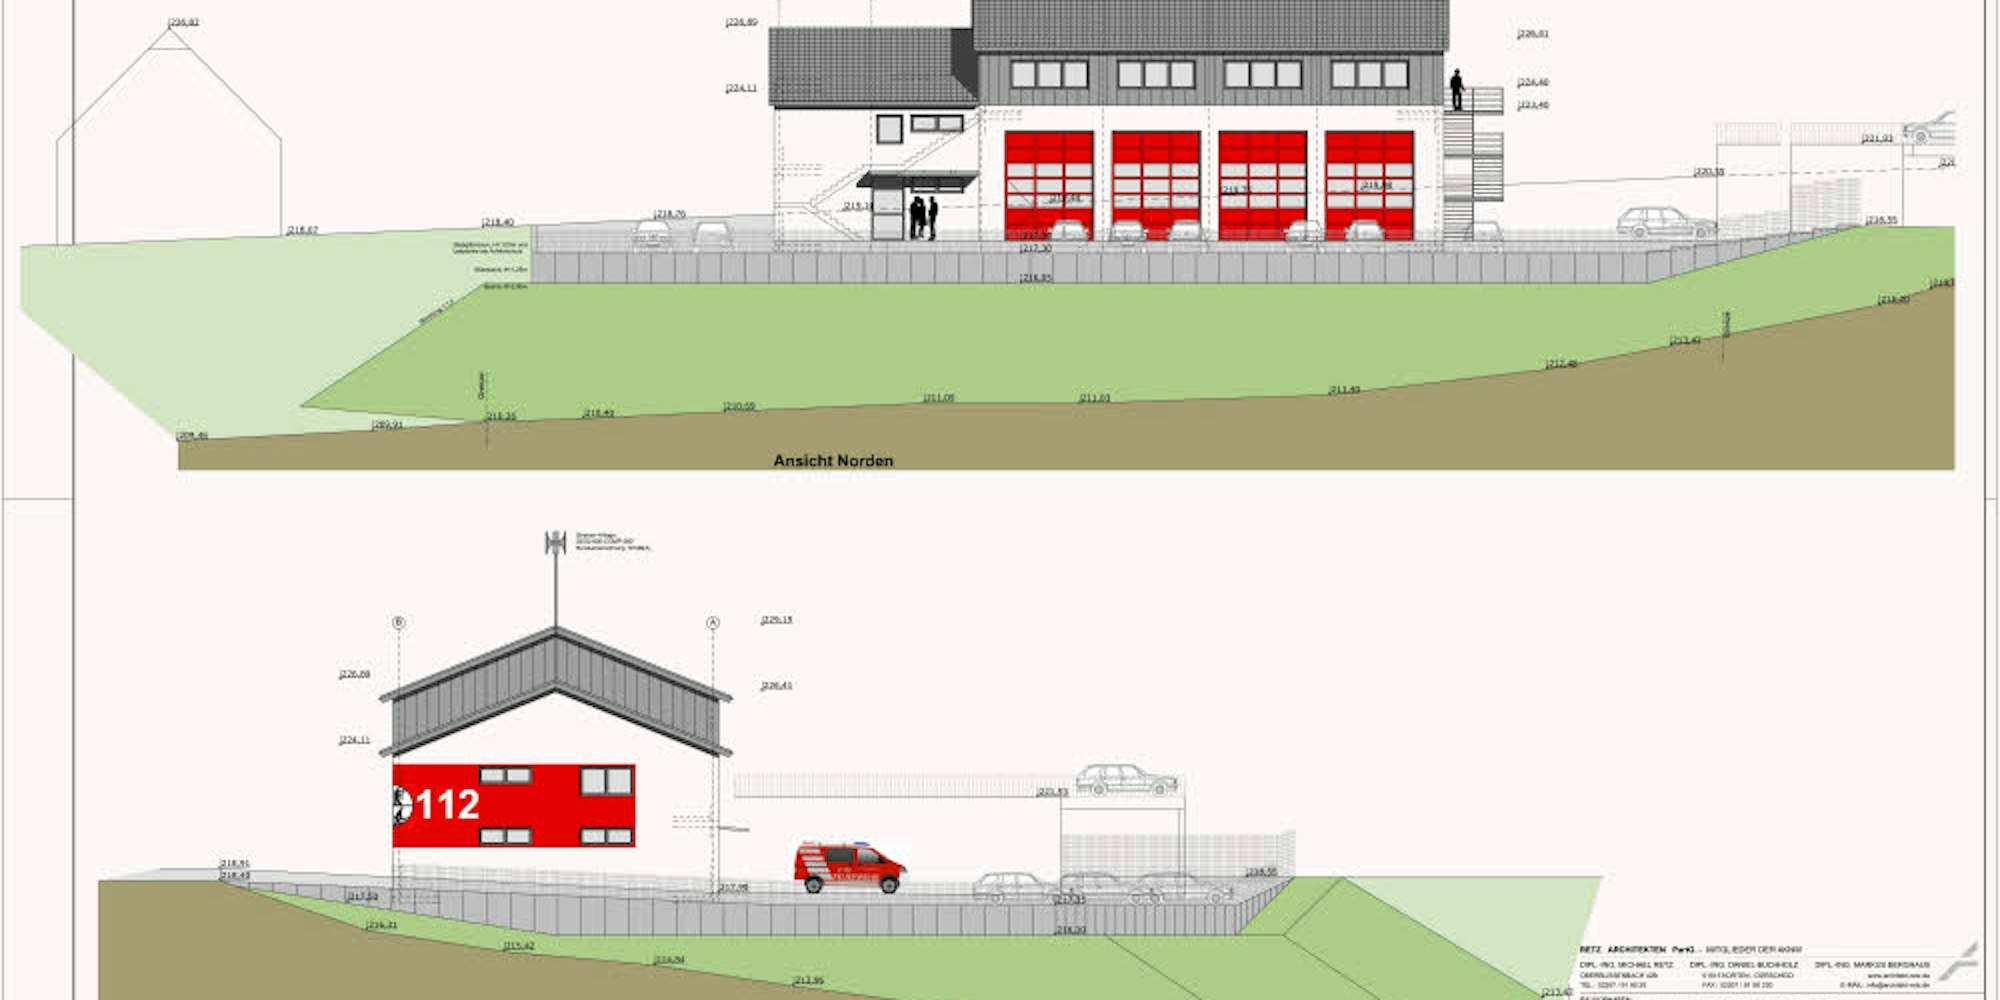 Für das Feuerwehrgerätehaus in Biesfeld sind aktuell nur noch vier Fahrzeugstellplätze geplant.